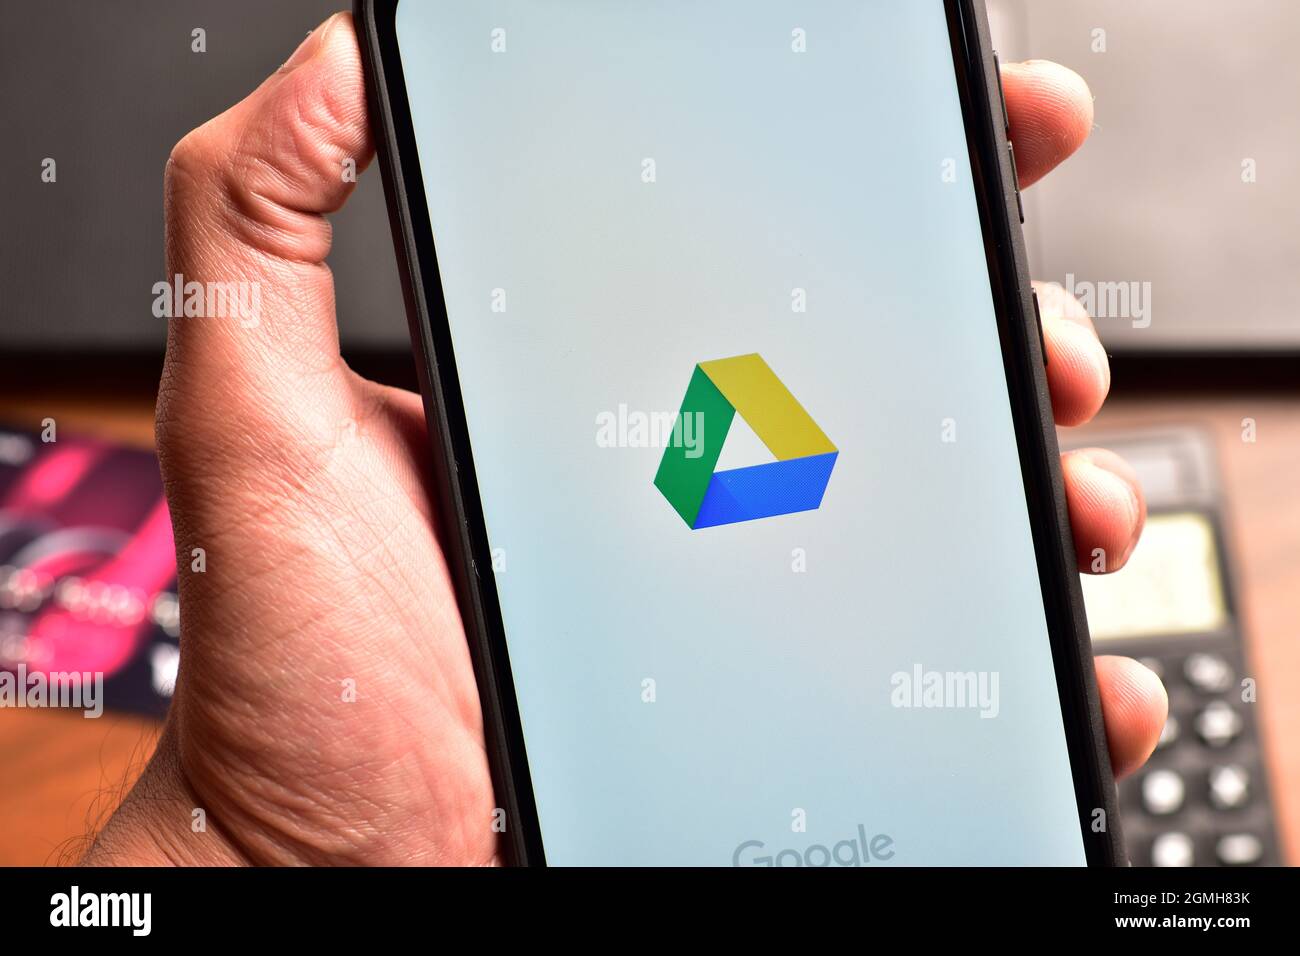 New Delhi, Inde - 22 décembre 2019 : logo Google Drive sur smartphone, Google Drive utilisé pour stocker la sauvegarde Banque D'Images